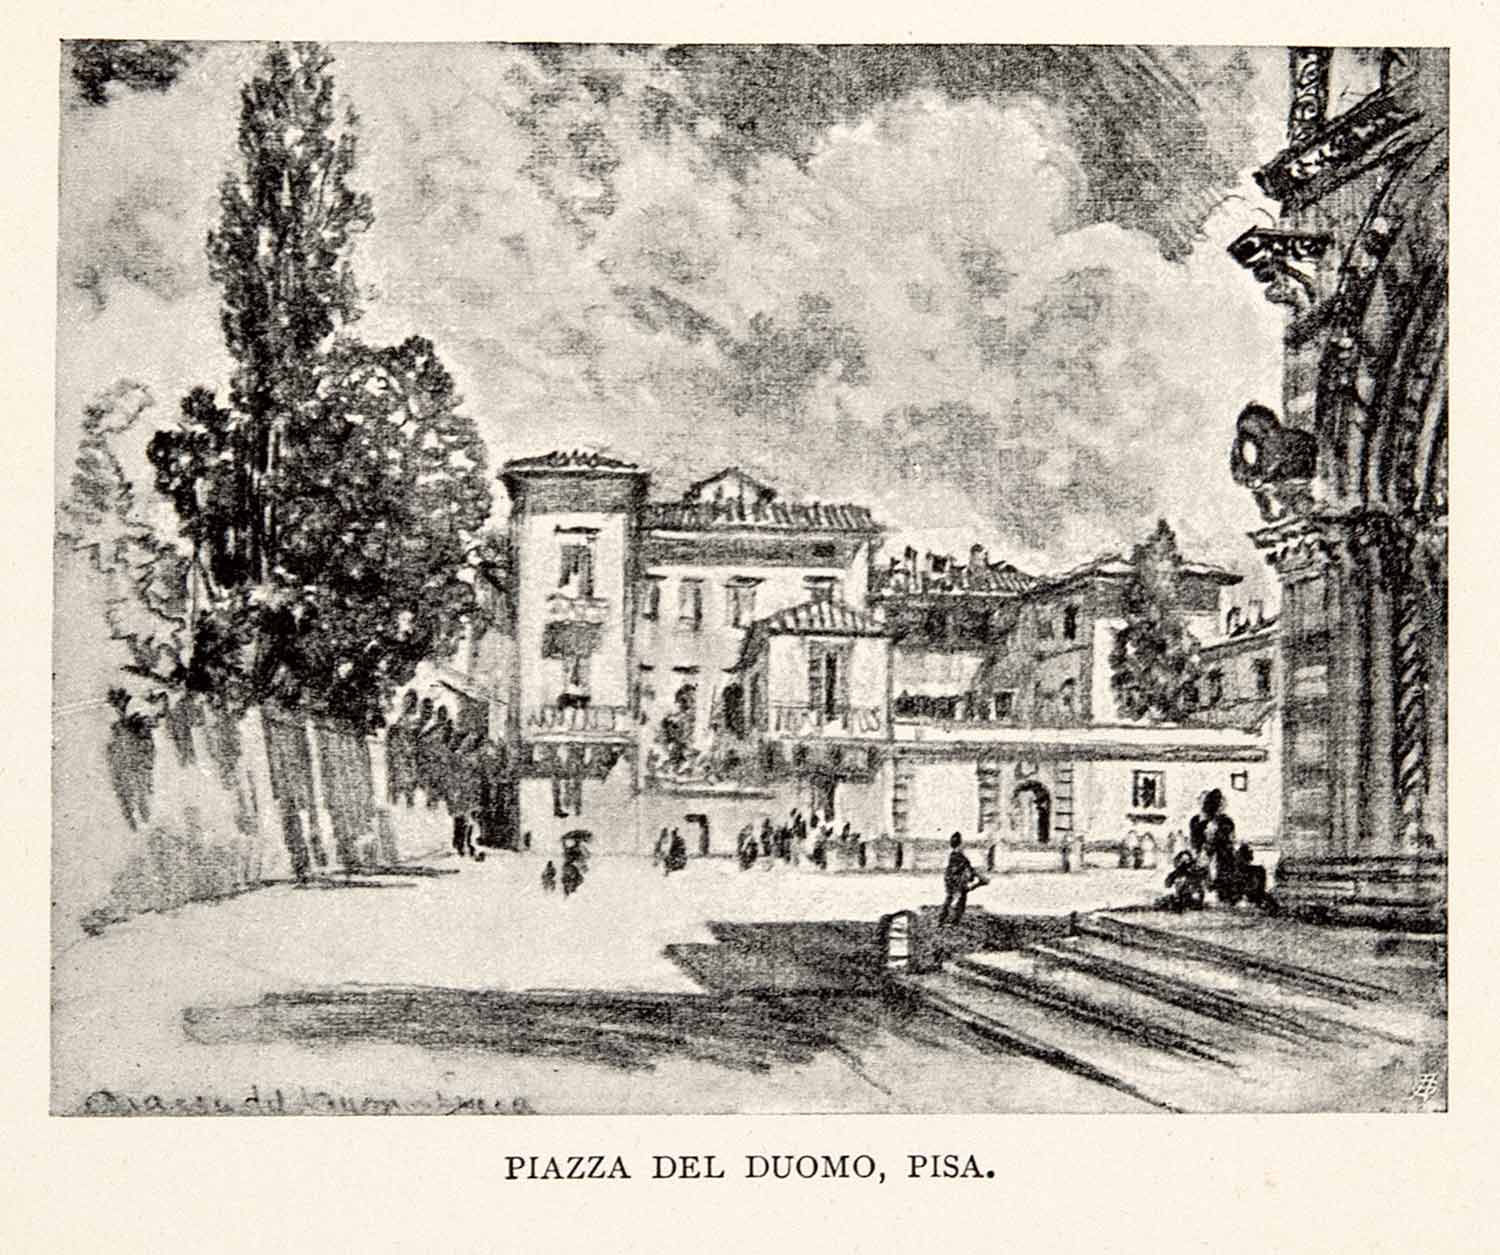 1904 Print Pisa Piazza Del Duomo Miracoli Cathedral Architecture Joseph XGWA4